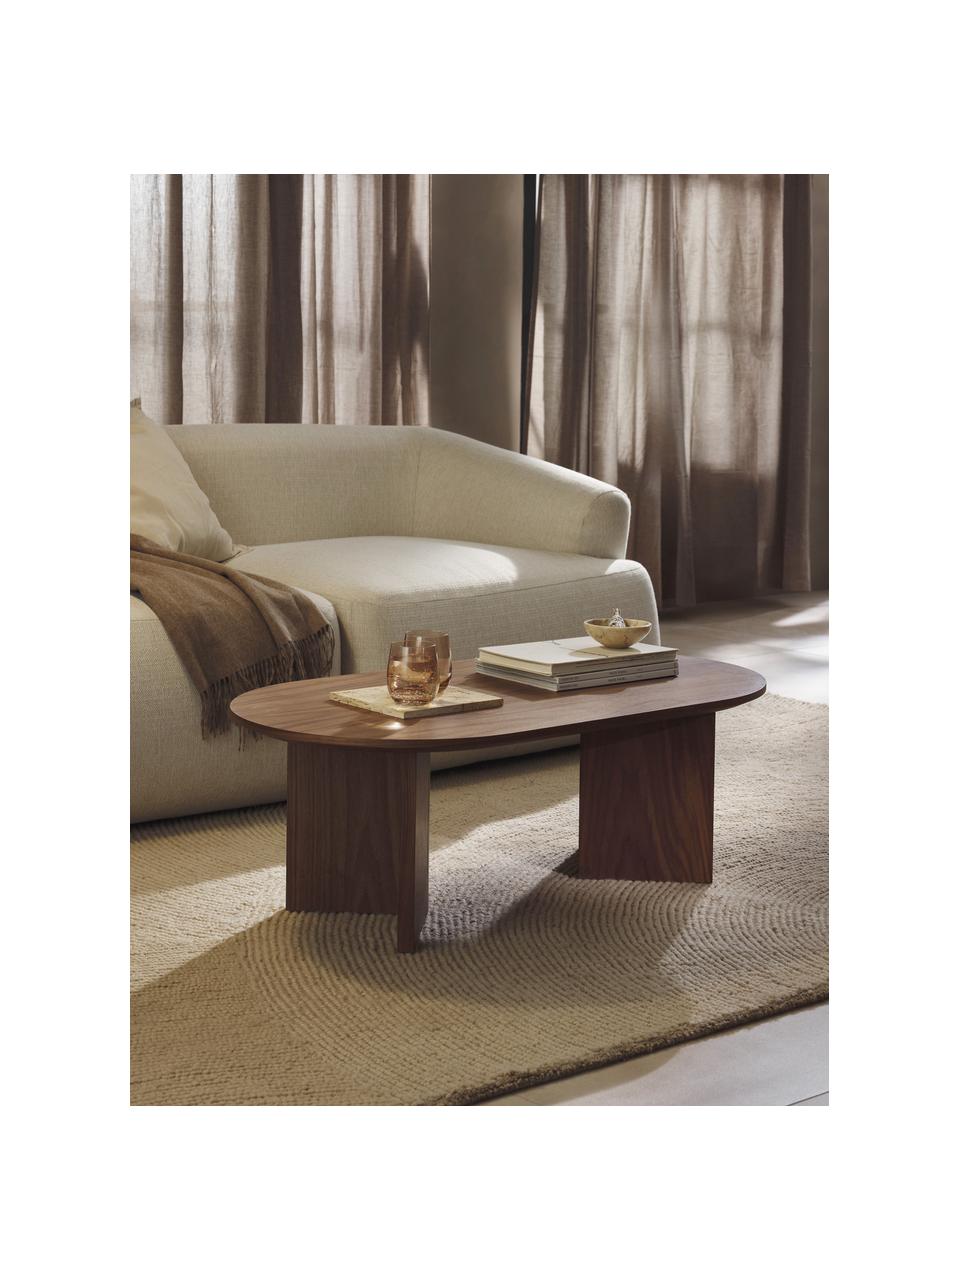 Oválný dřevěný konferenční stolek Toni, Dřevovláknitá deska střední hustoty (MDF) s lakovaná dýha z ořechového dřeva

Tento produkt je vyroben z udržitelných zdrojů dřeva s certifikací FSC®., Ořechové dřevo, Š 100 cm, H 55 cm